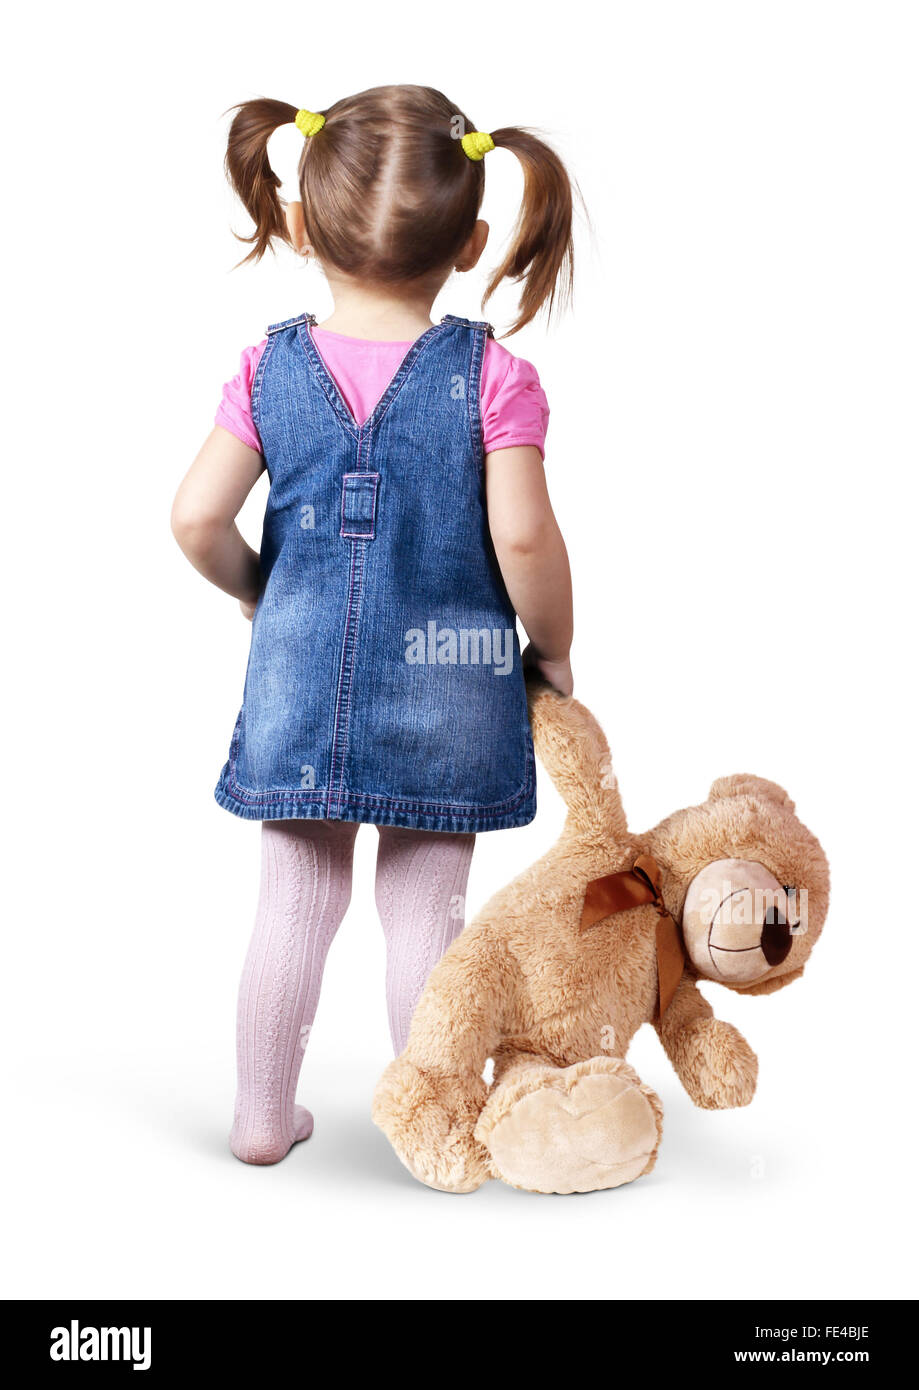 Kleines Kind Mädchen mit Spielzeug Bär auf weiß, Ansicht von hinten Stockfoto